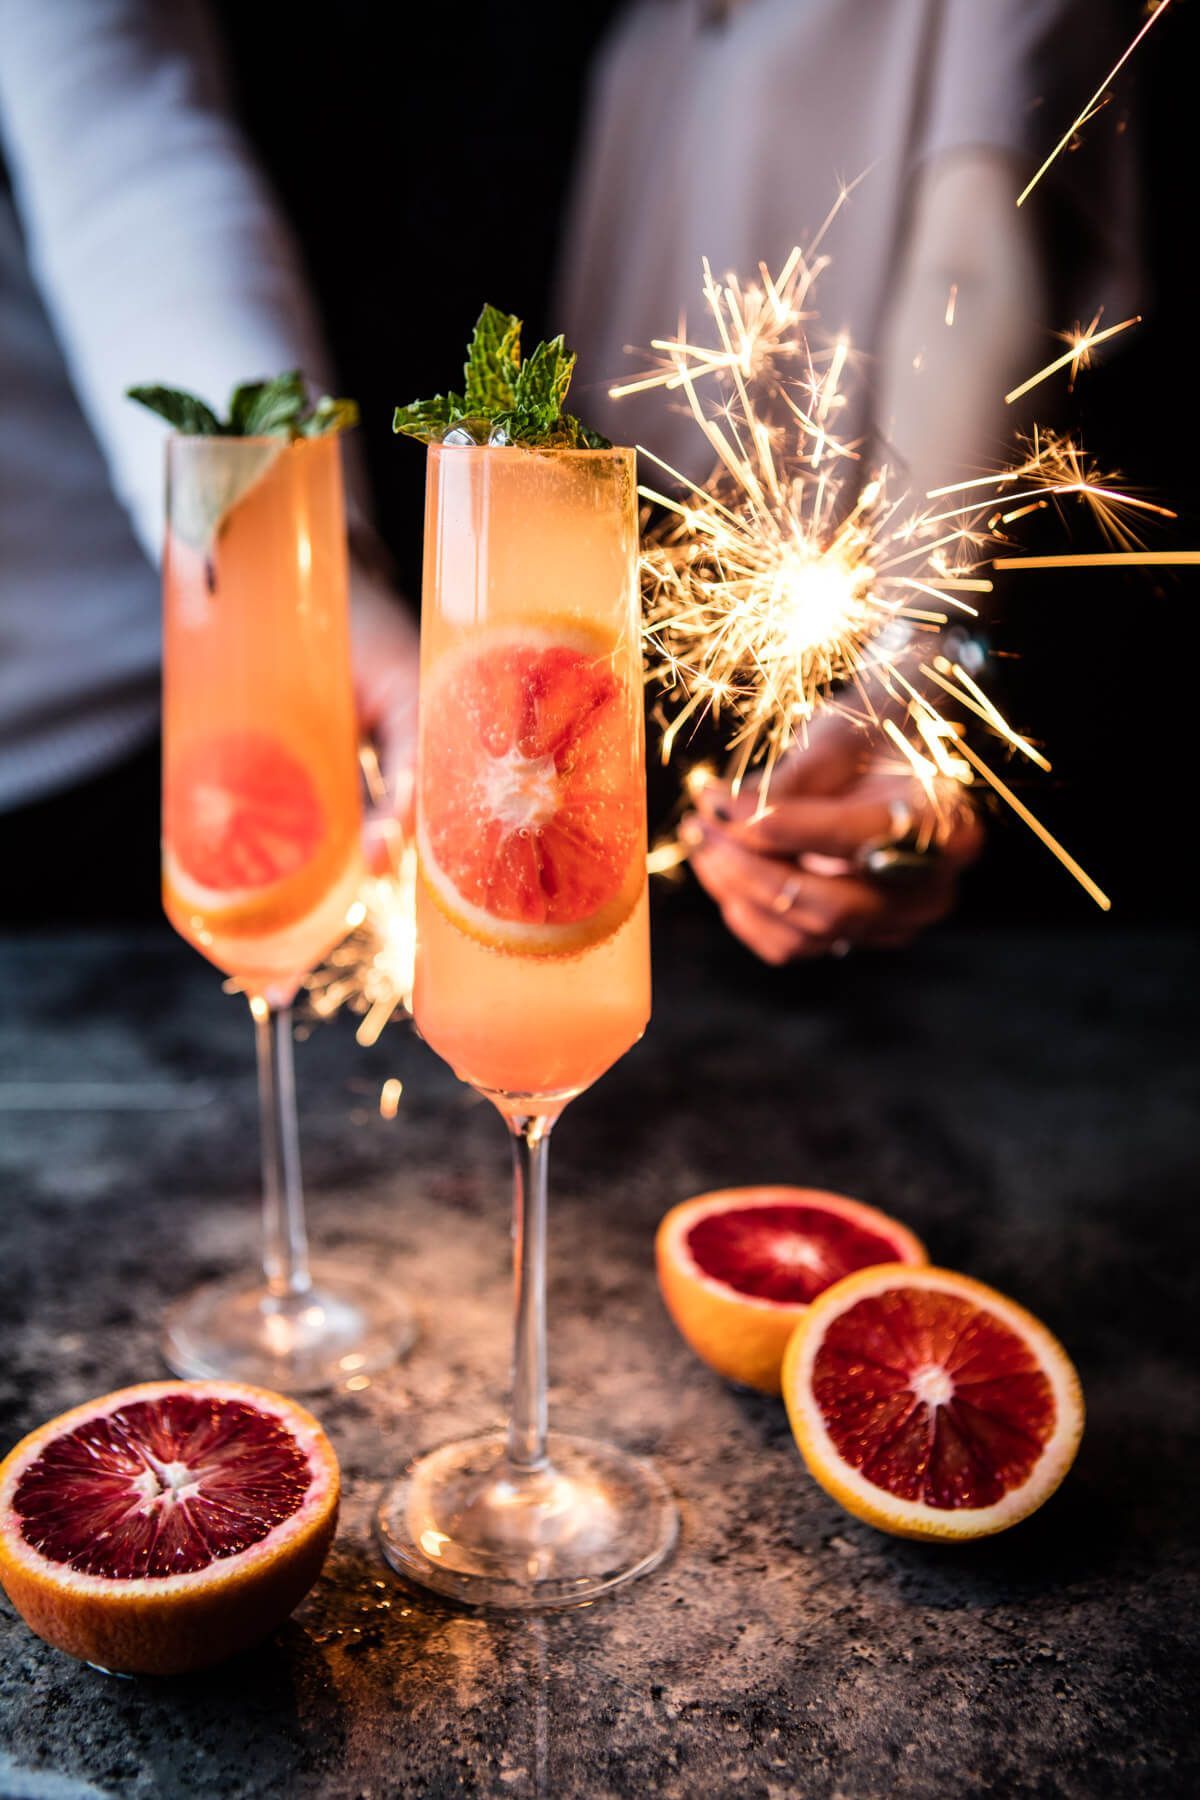 16 Recetas de cocteles con champagne para grandes celebraciones - Vinos - Sitio web amantes del